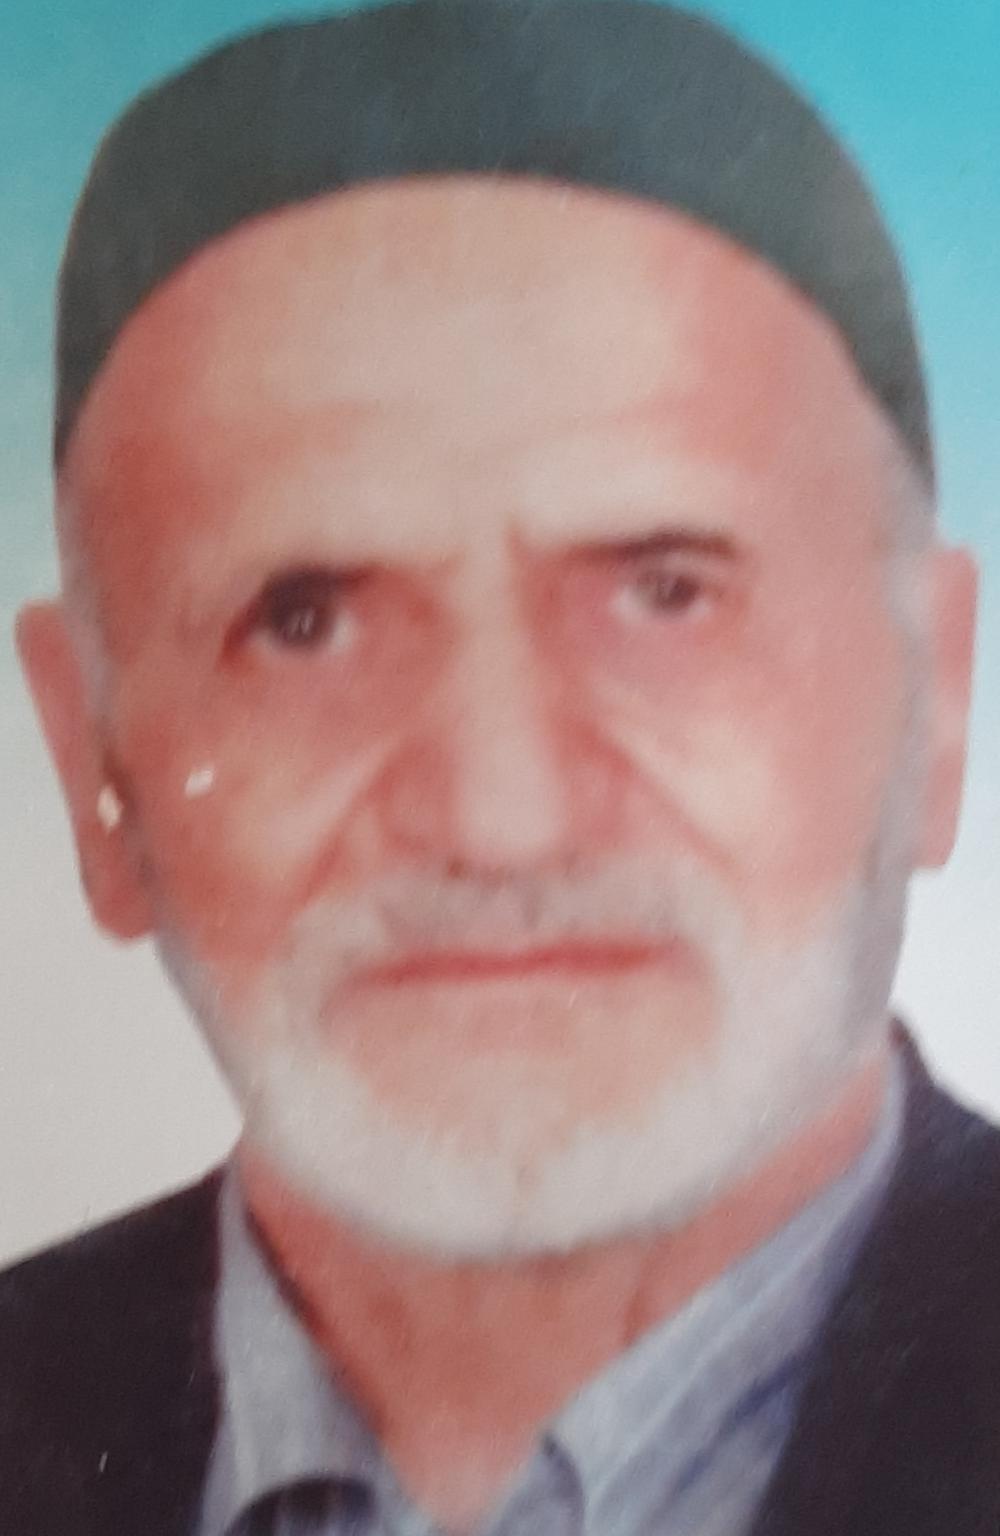 یادبود شادروان کربلایی سید حسین حسینی قوچان عتیق